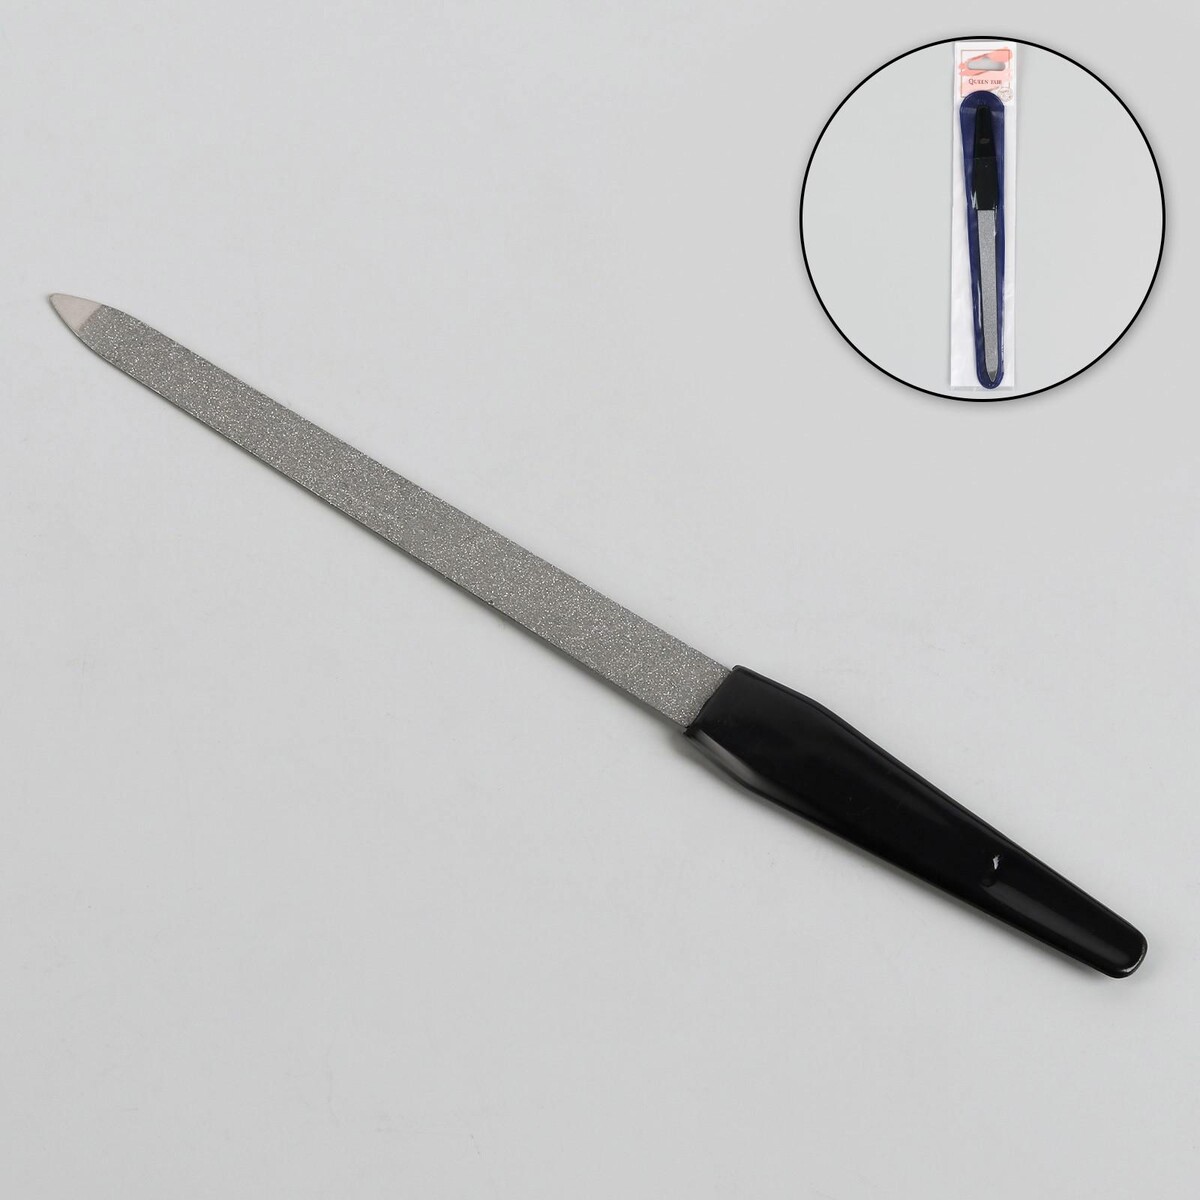 Пилка металлическая для ногтей, 17 см, в чехле, цвет серебристый/черный пилка металлическая для ногтей перфорированная 15 см